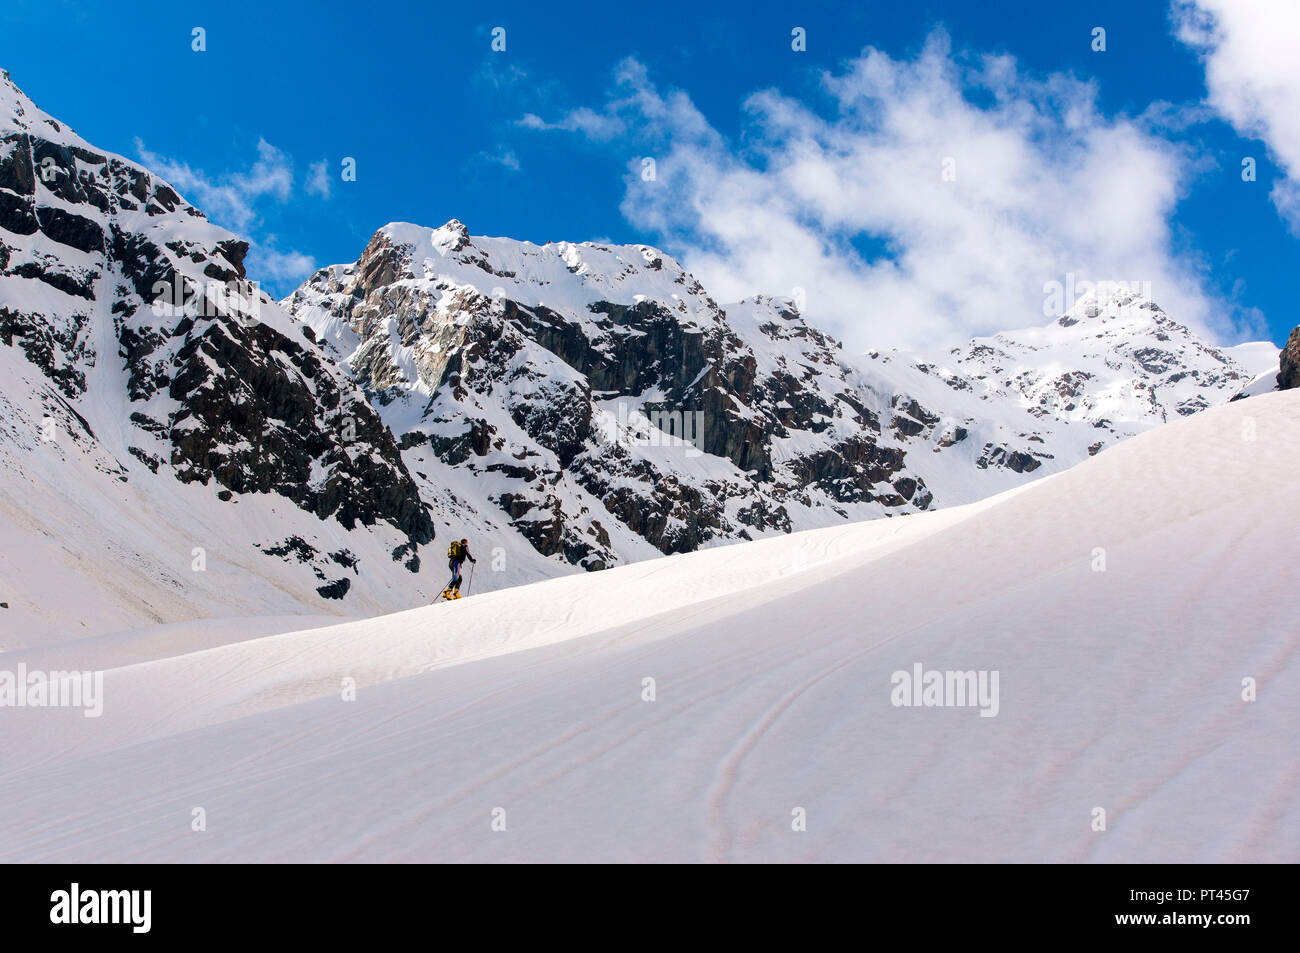 Ski touring on Ventina Glacier on Disgrazia Group, Chiareggio, Valmalenco, Province of Sondrio, Lombardy, Italy Stock Photo